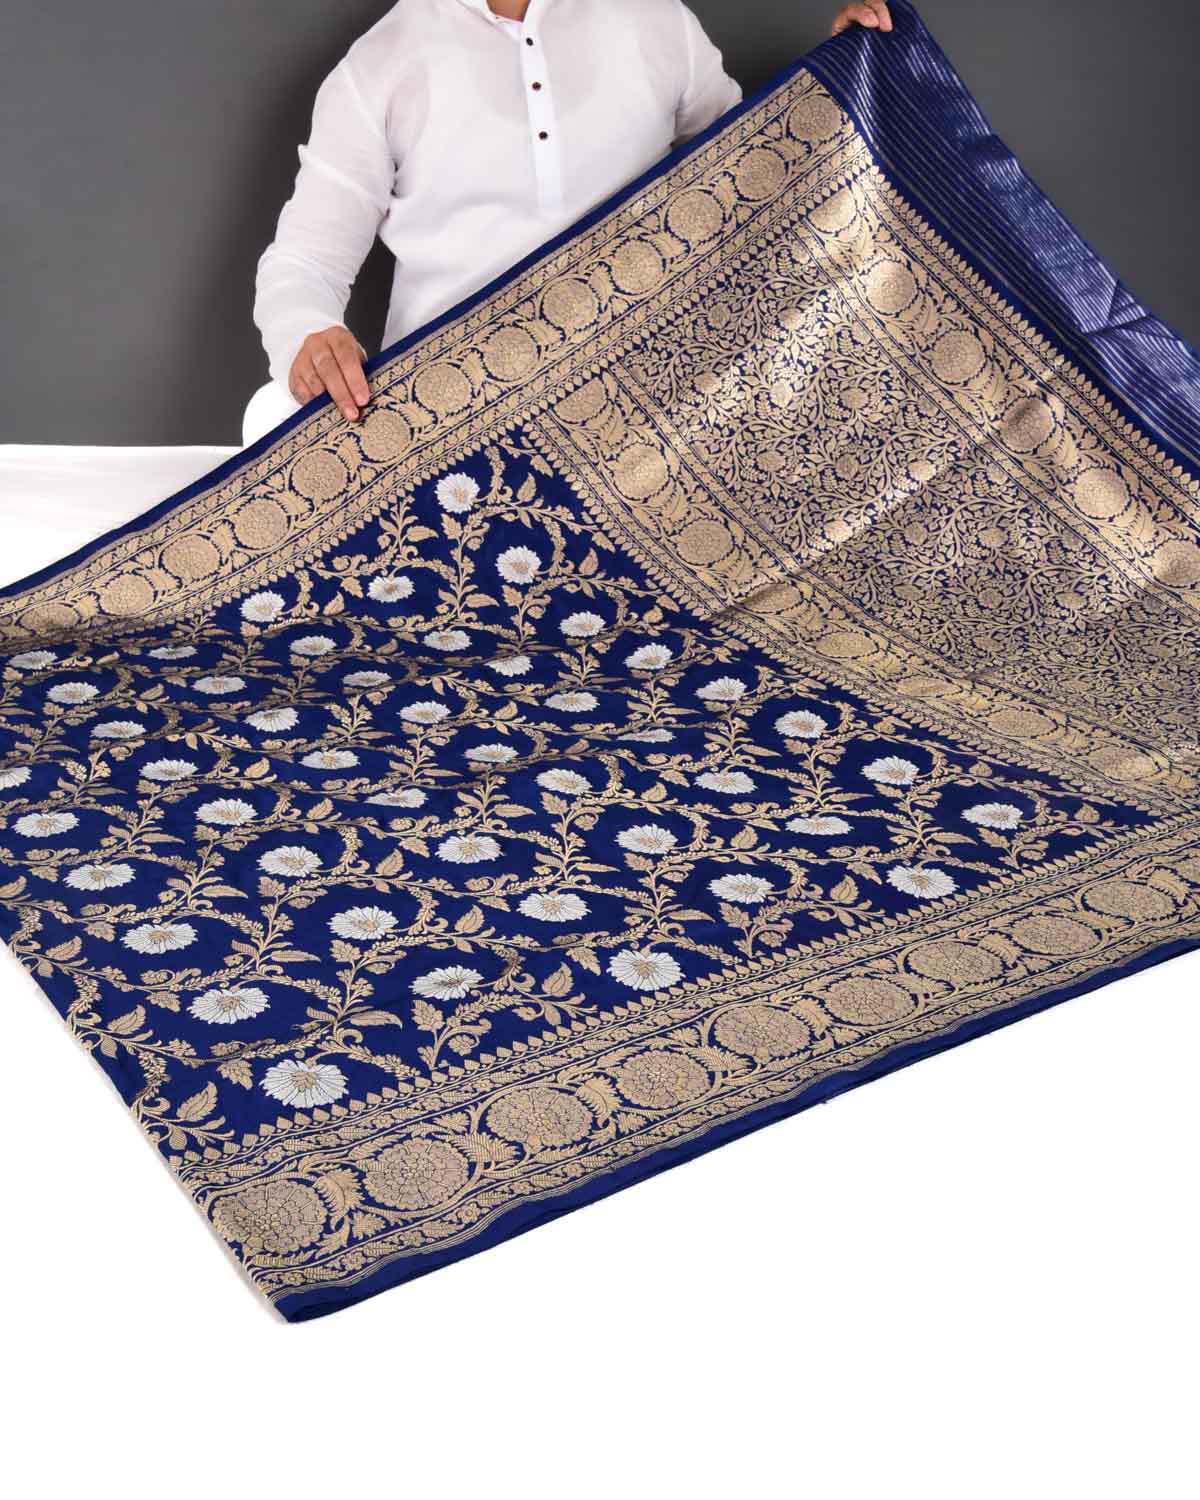 Navy Blue Banarasi Gold & Silver Zari Floral Jaal Kadhuan Brocade Handwoven Katan Silk Saree - By HolyWeaves, Benares